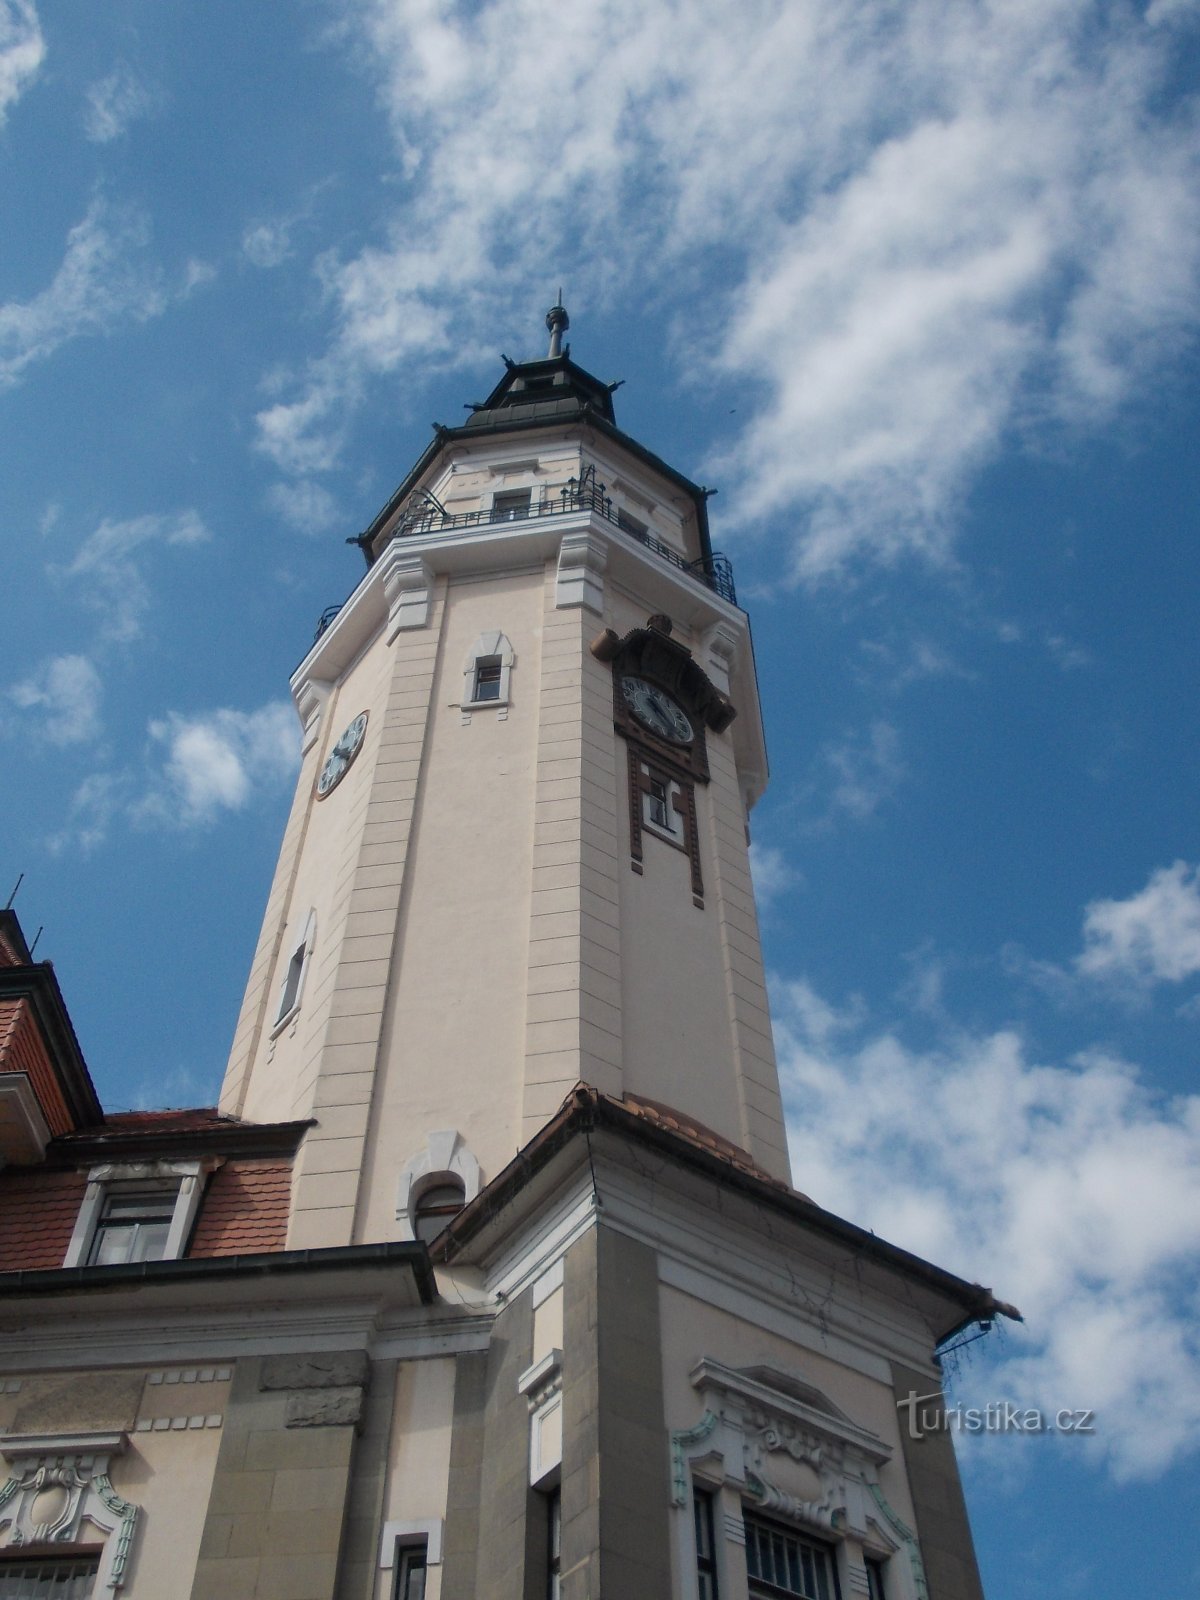 rådhusets torn är 63 meter högt